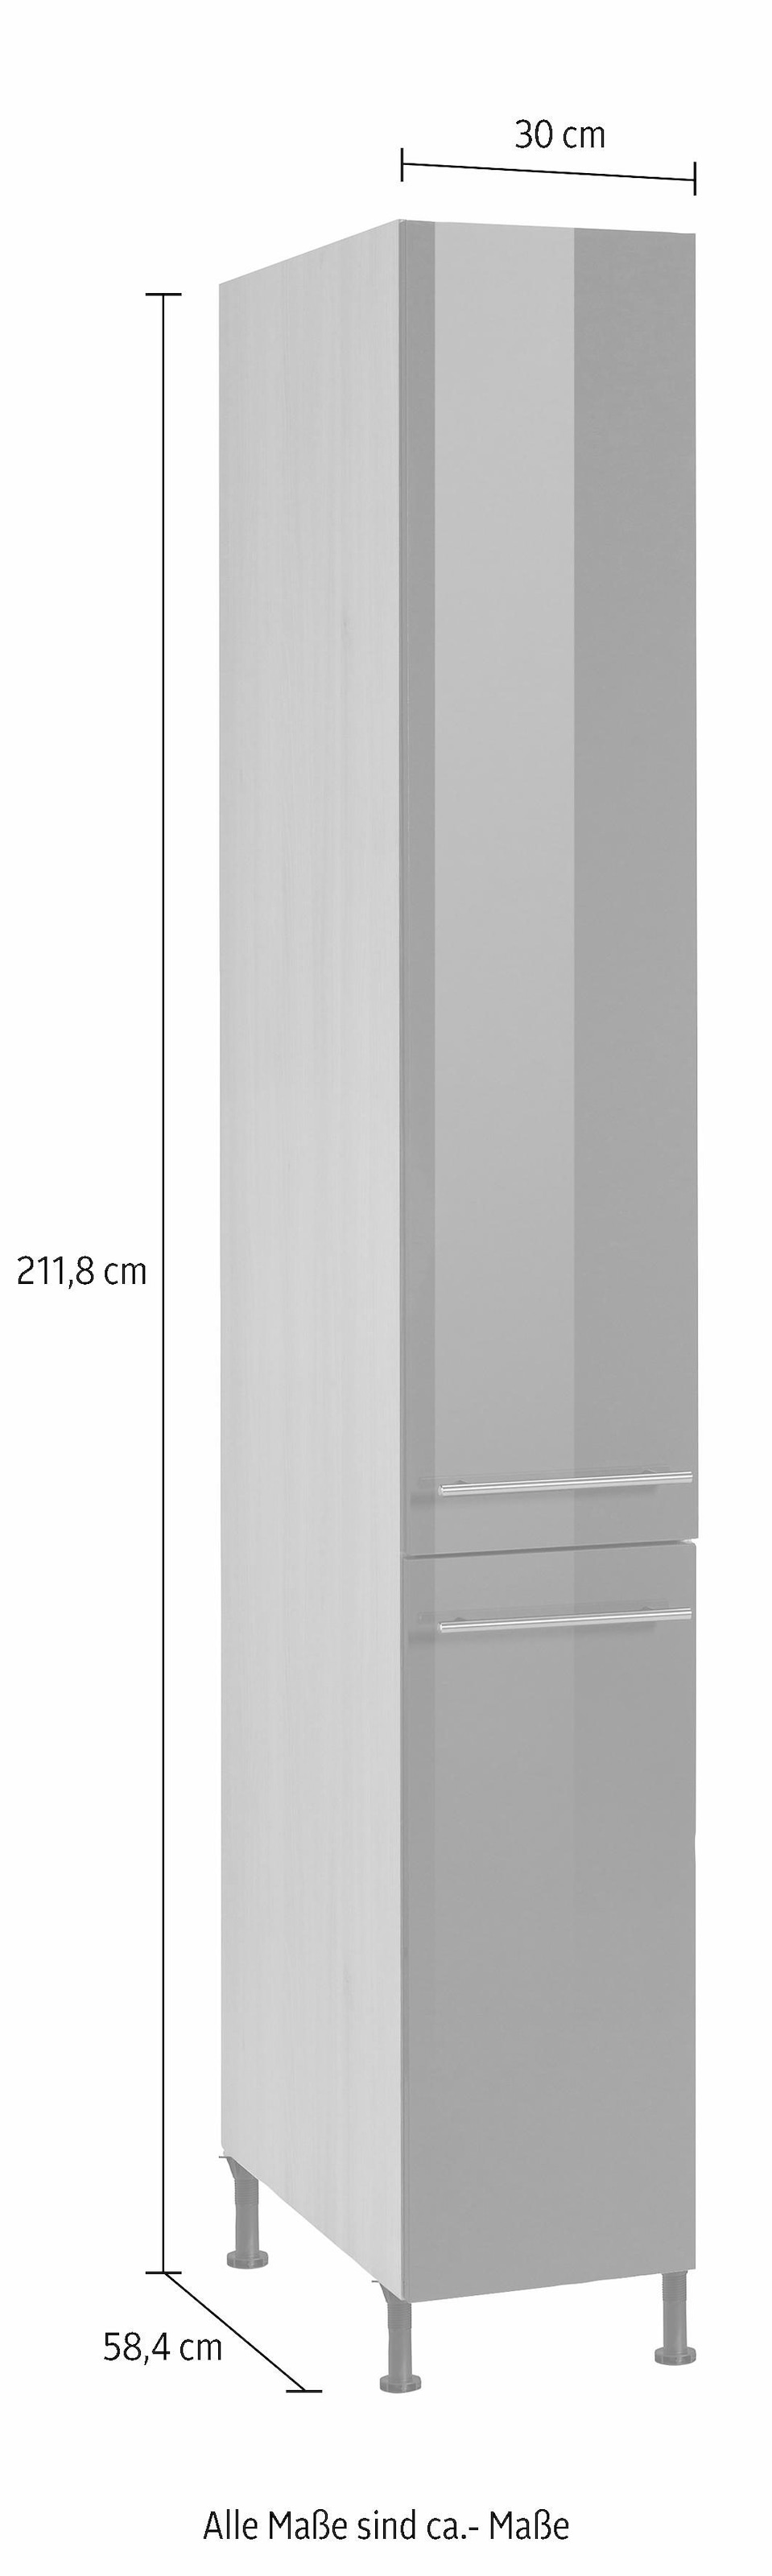 OPTIFIT Apothekerschrank »Bern«, 30 cm breit, 212 cm hoch, mit höhenverstellbaren Stellfüßen